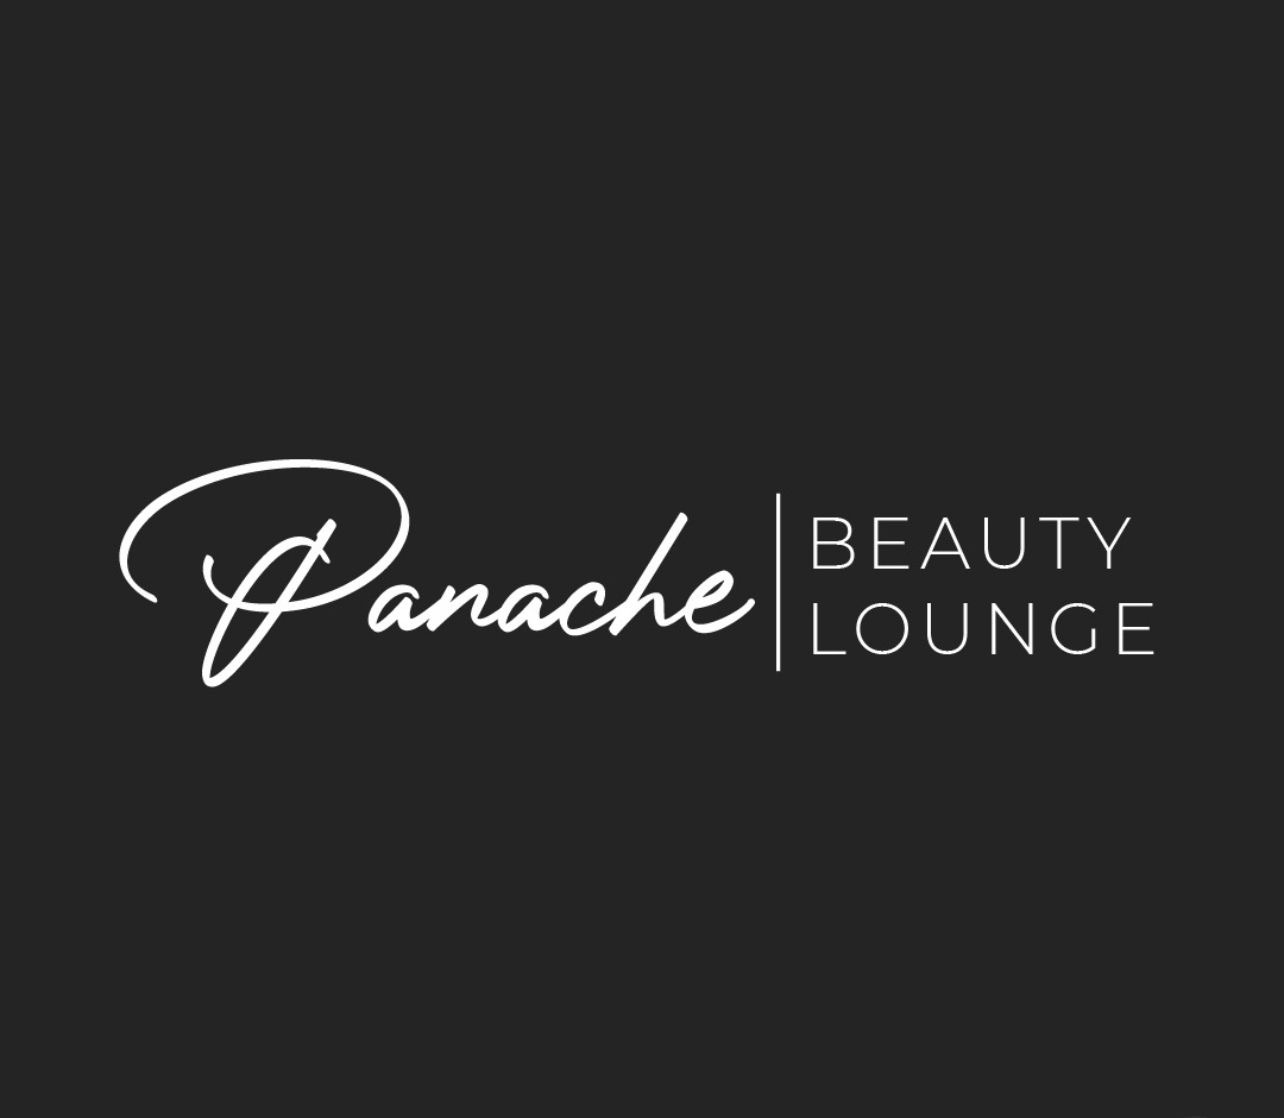 Panache Beauty Lounge